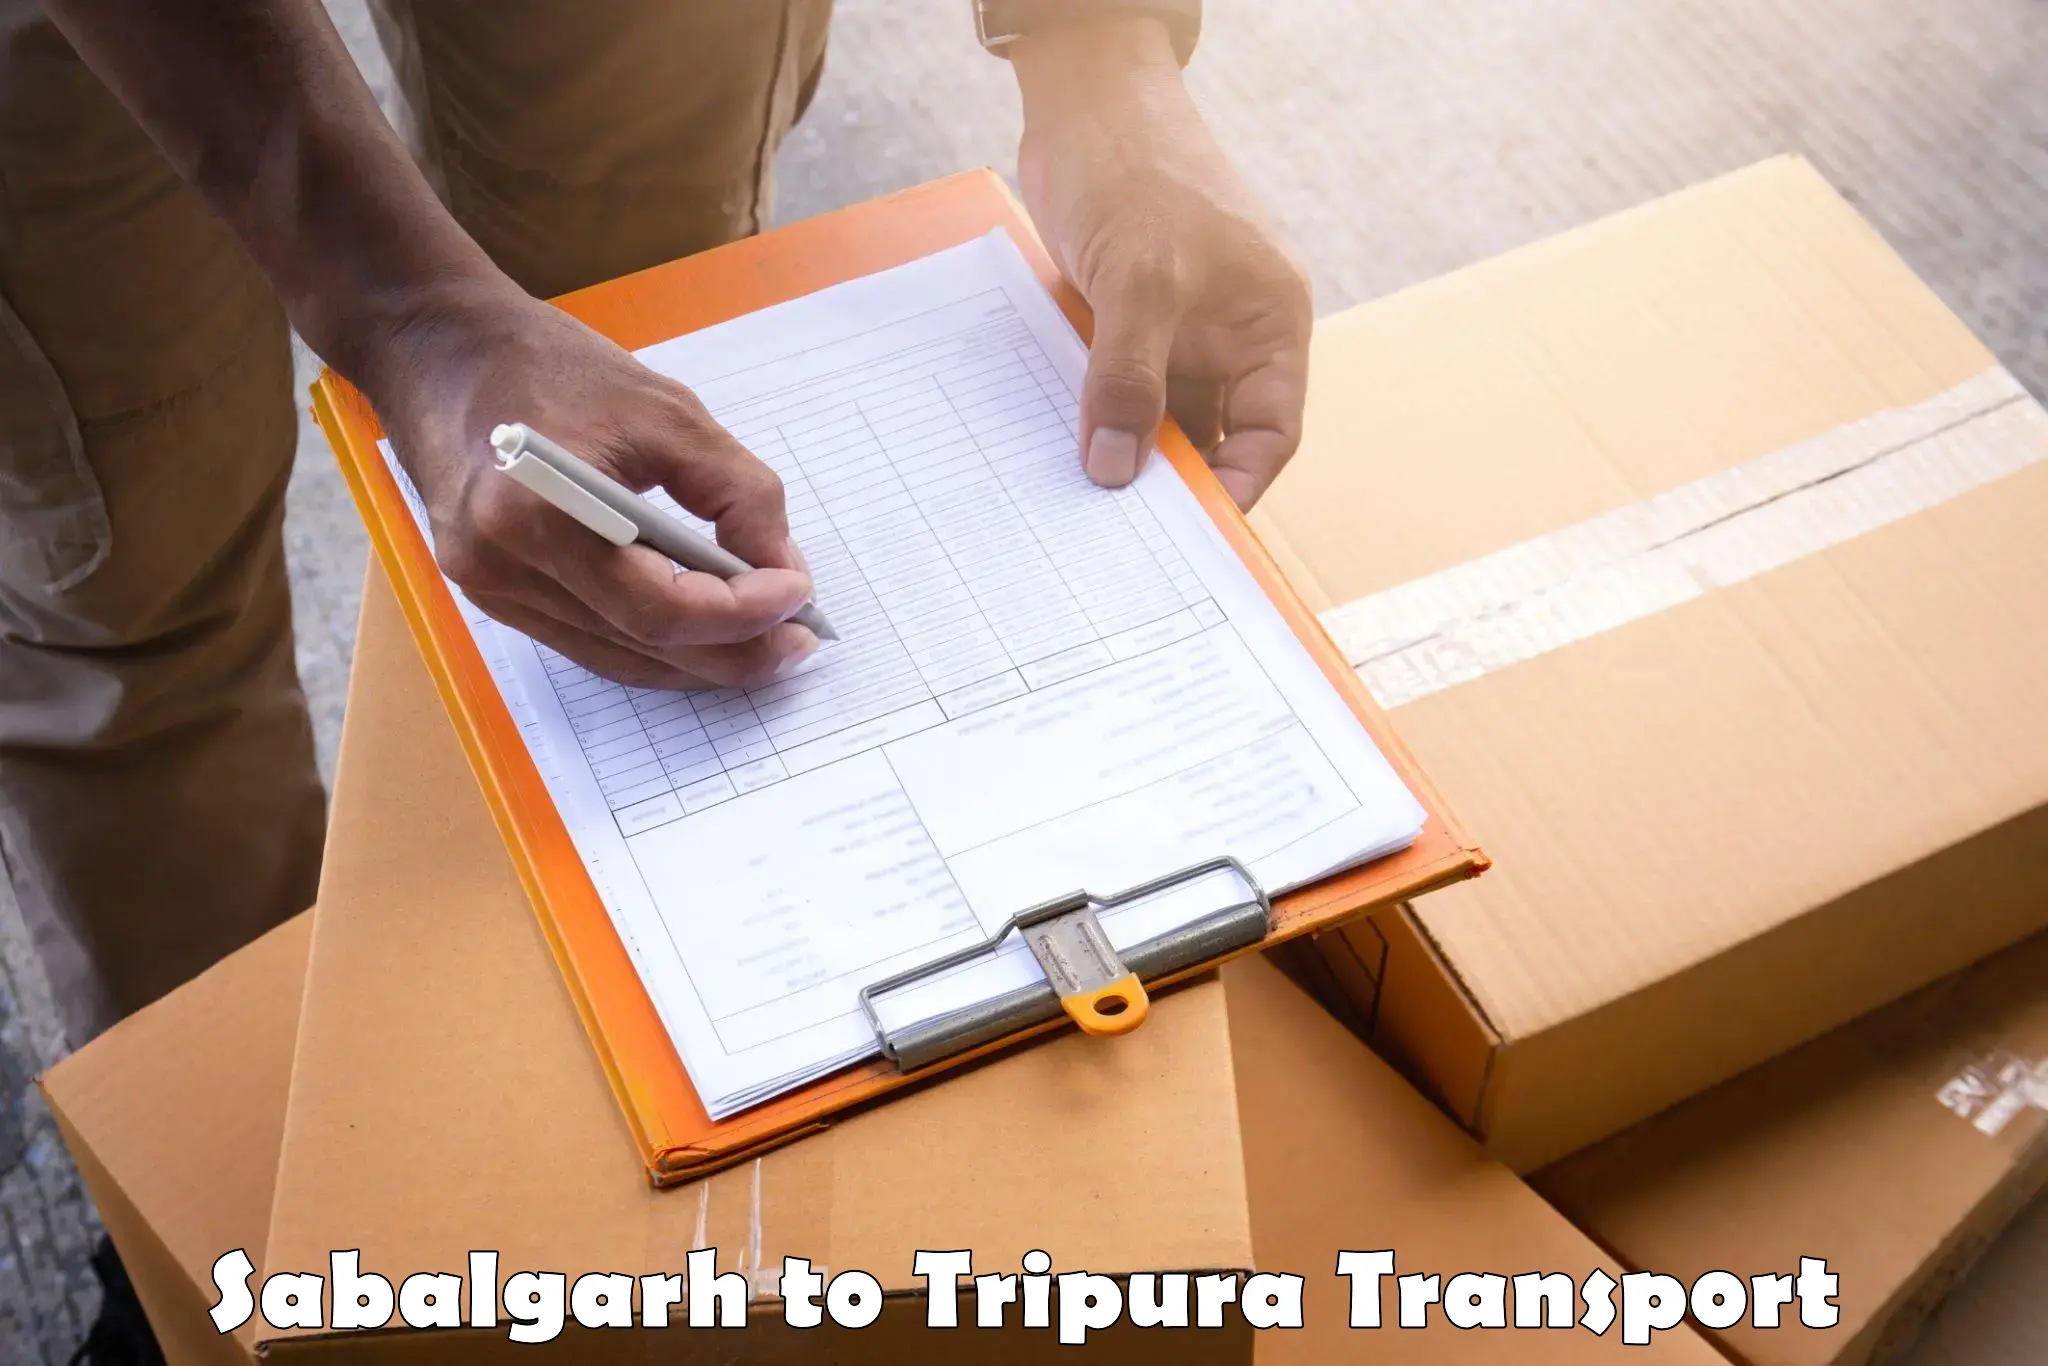 Nearby transport service Sabalgarh to Teliamura